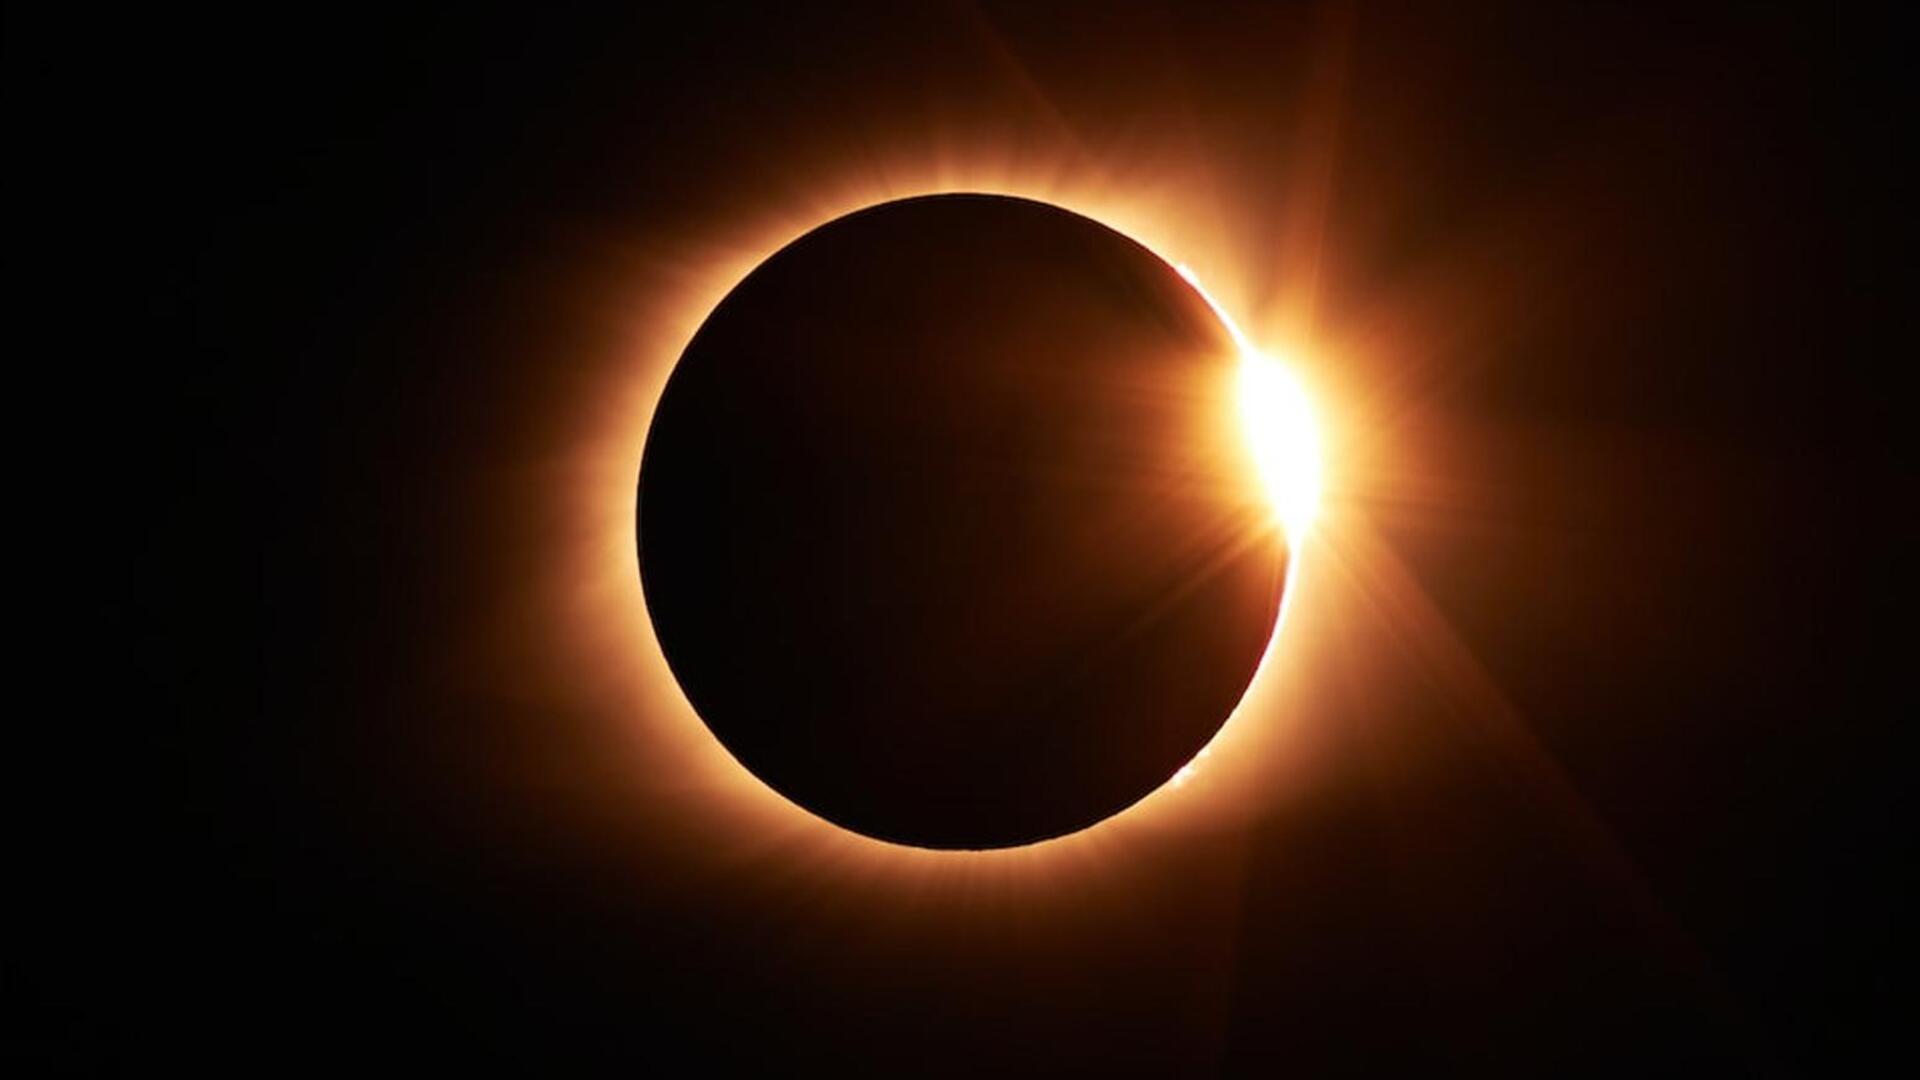 14 अक्टूबर को दिखेगा सूर्य ग्रहण, जानिए कब और कैसे देख सकेंगे यह खगोलीय घटना